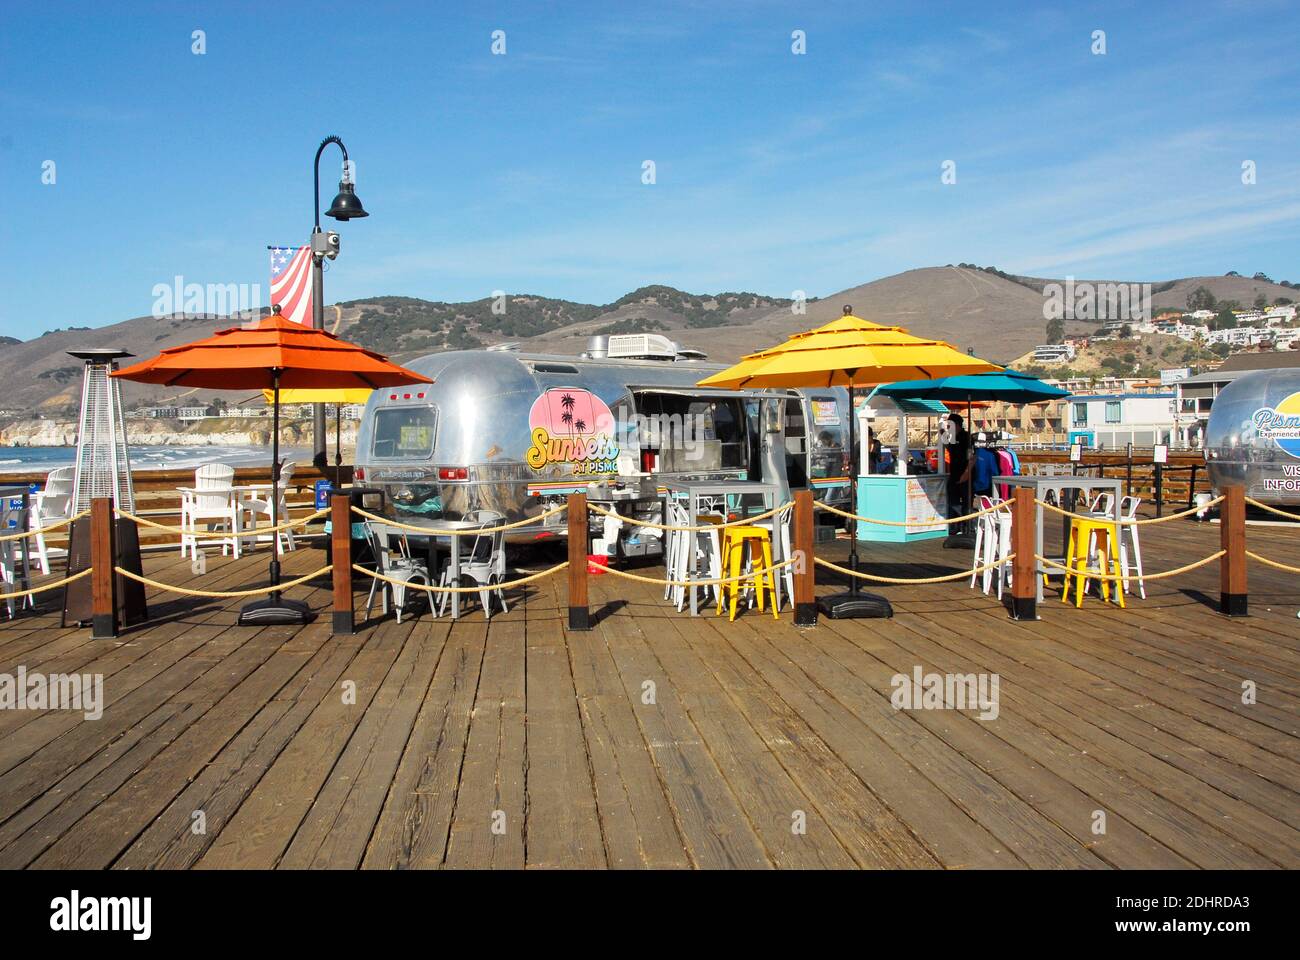 Restaurants et plats à emporter à Pismo Beach, dans le comté de San Luis Obispo, en Californie, célèbre pour ses palourdes, ses plages et ses dunes de sable de Pismo. Banque D'Images